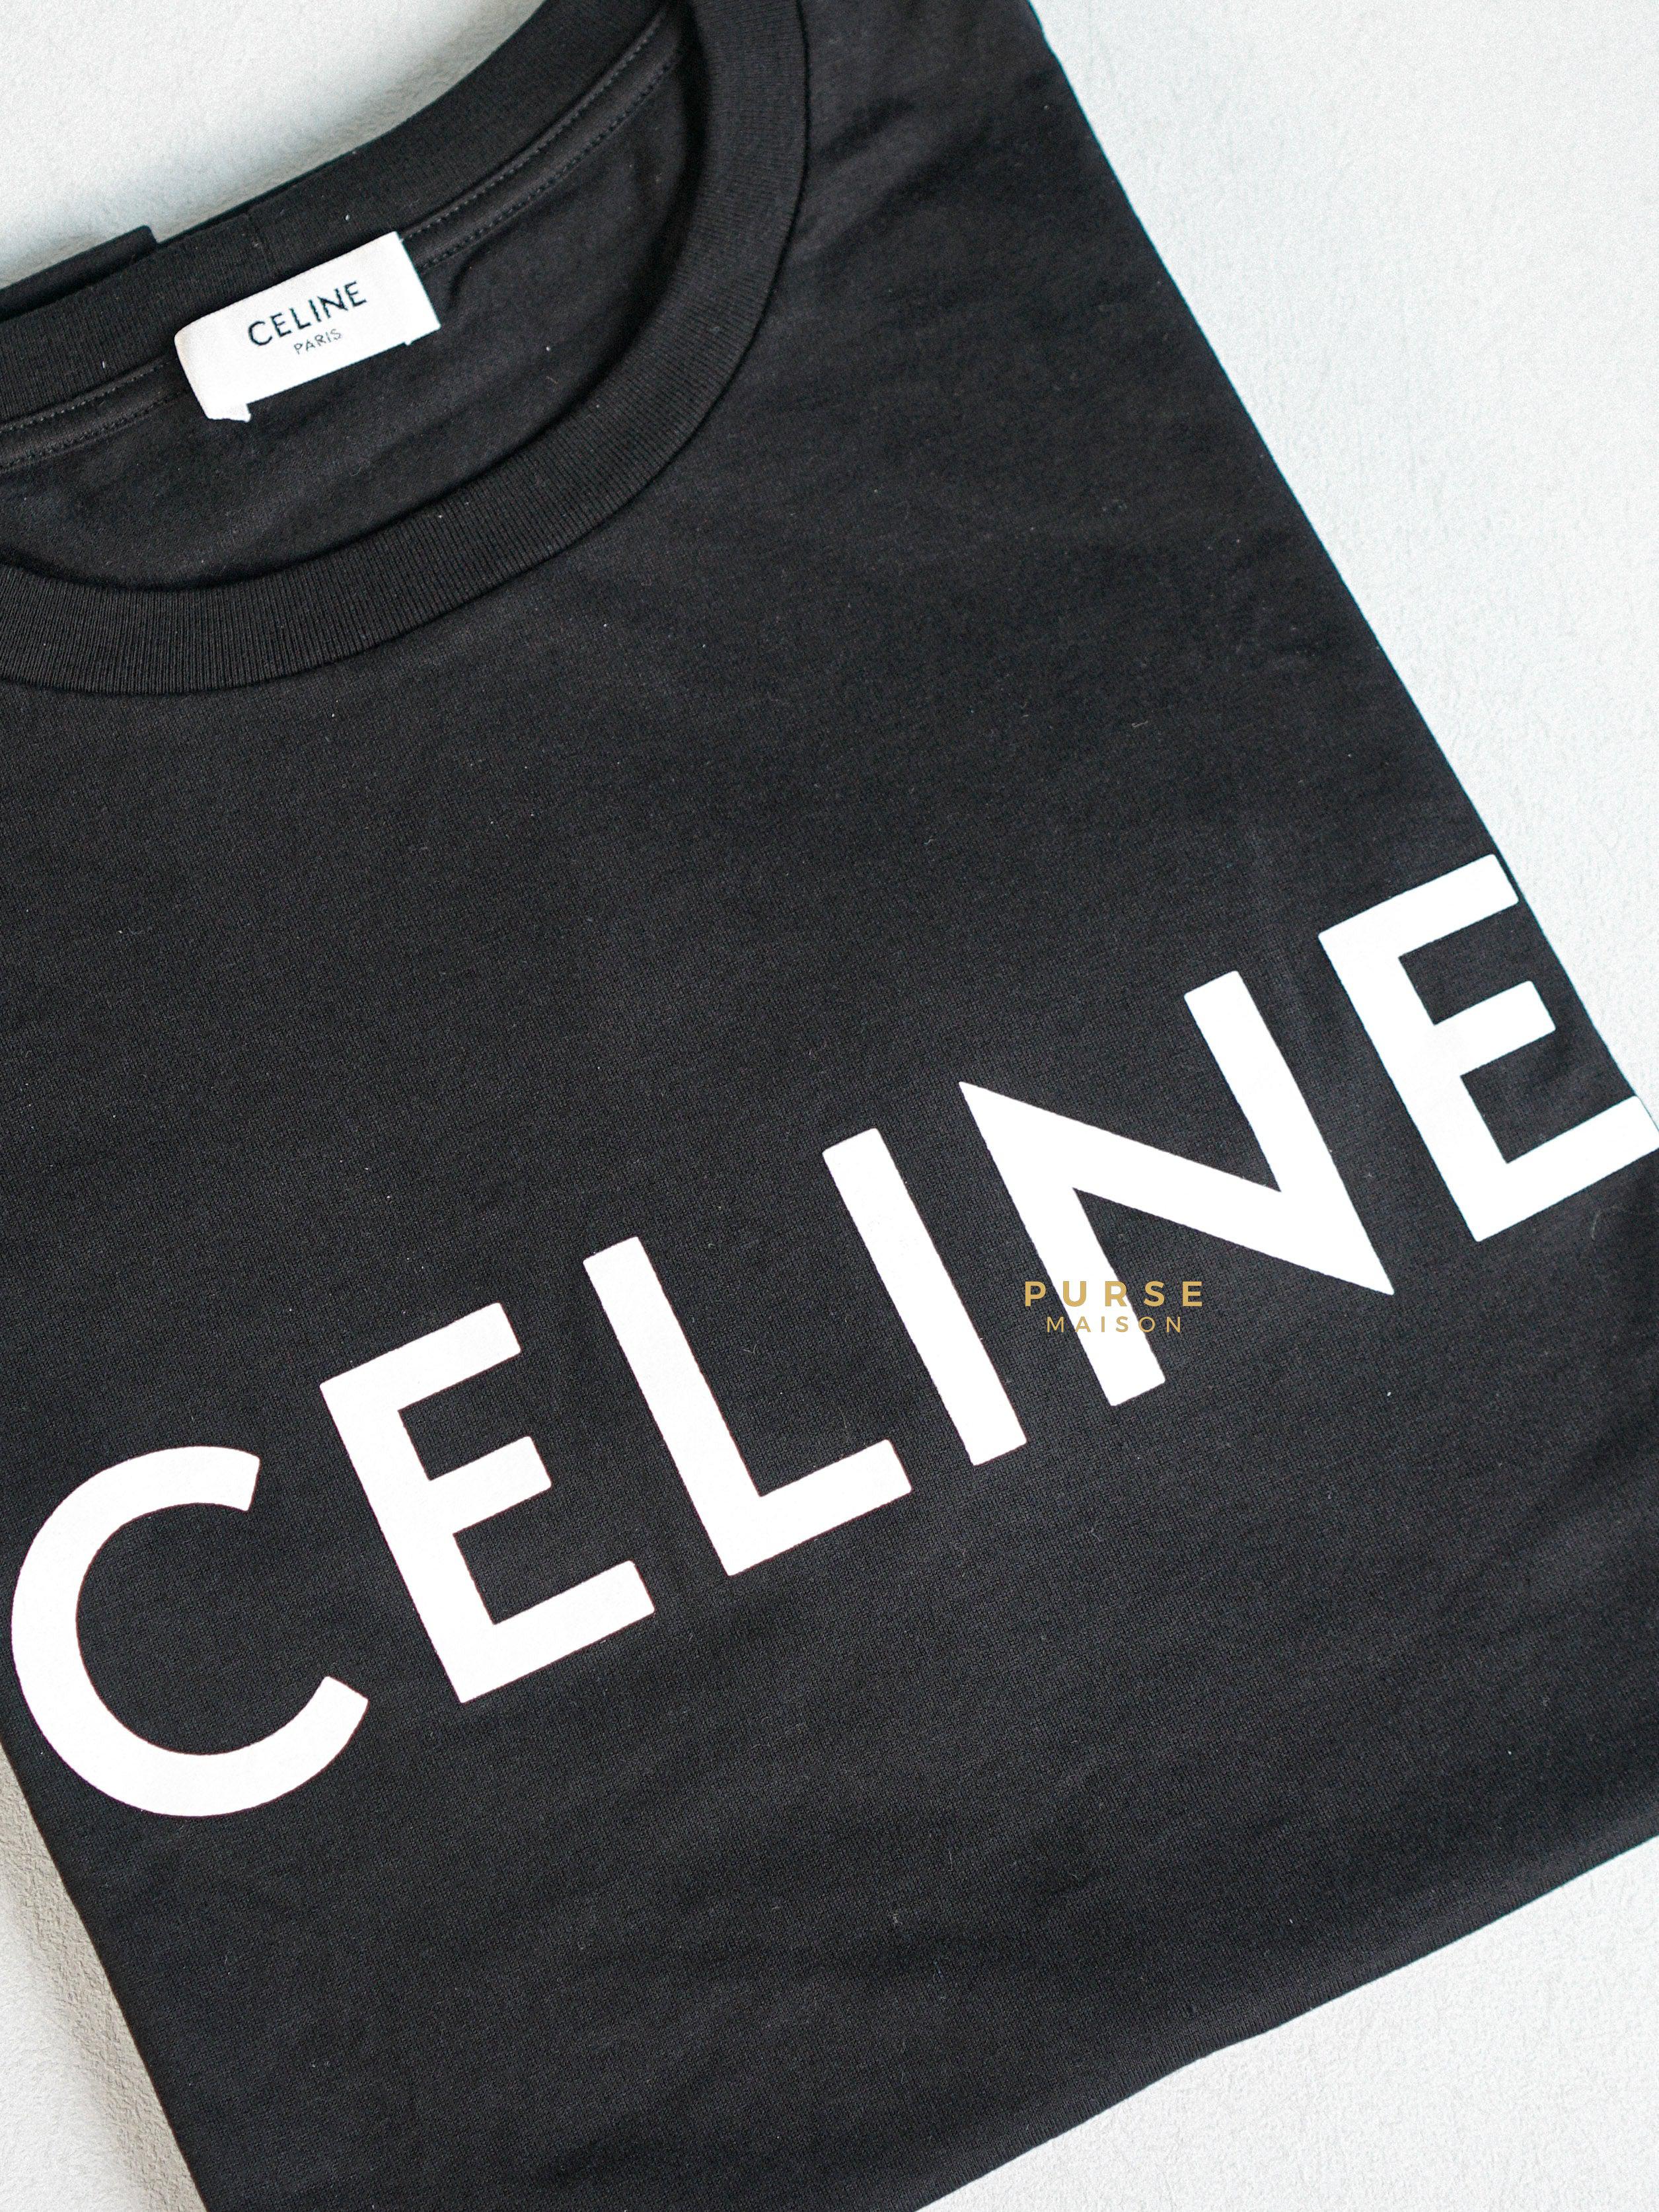 Celine Loose T-shirt In Cotton Jersey Black (Medium) | Purse Maison Luxury Bags Shop